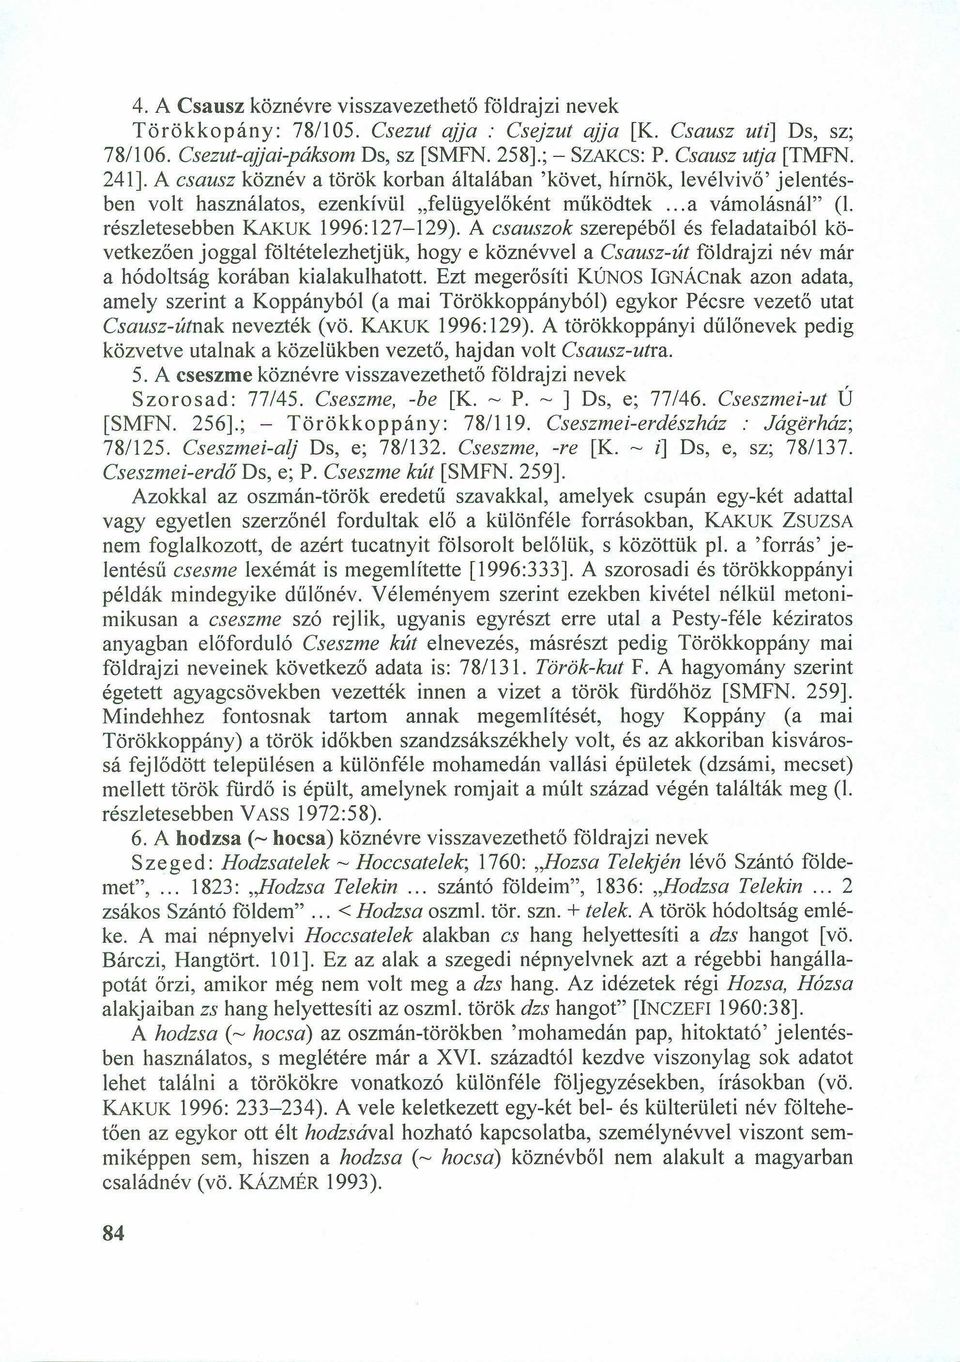 A csausz köznév a török korban általában 'követ, hírnök, levélvivő' jelentésben volt használatos, ezenkívül "felügyelőként működtek... a vámolásná1" (1. részletesebben KAKUK 1996: 127-129).